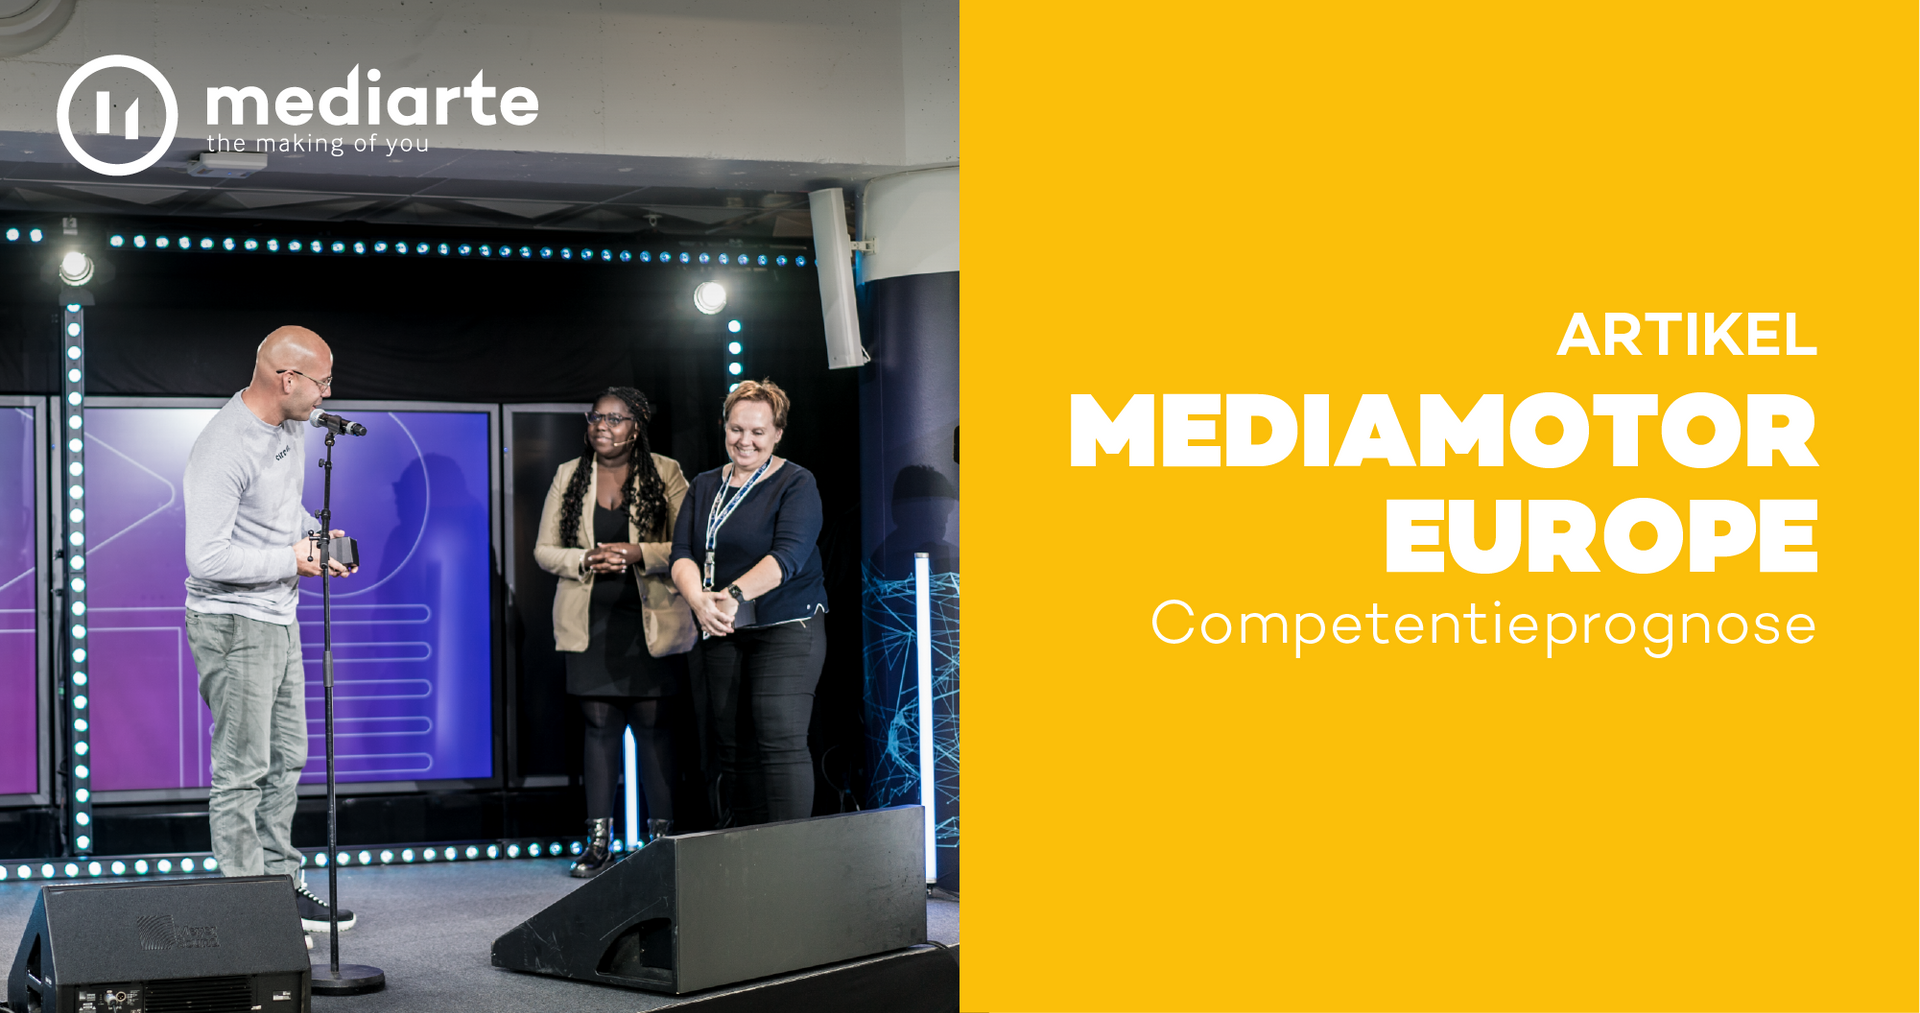 MediaMotor Europe